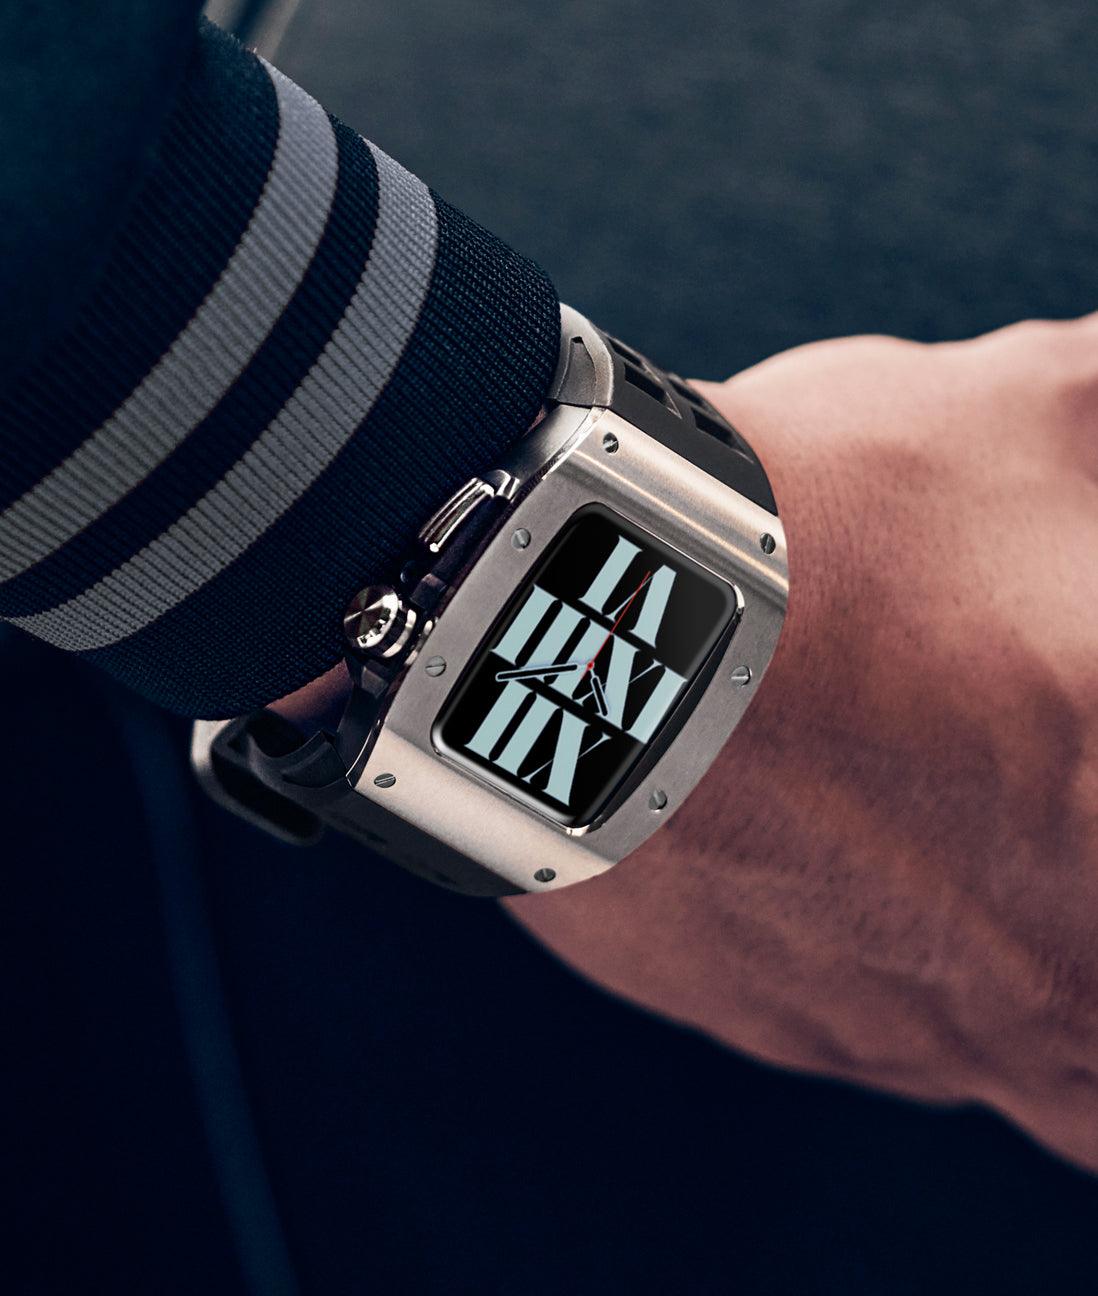 Apple Watch 錶殼銀色 MC - 橡膠